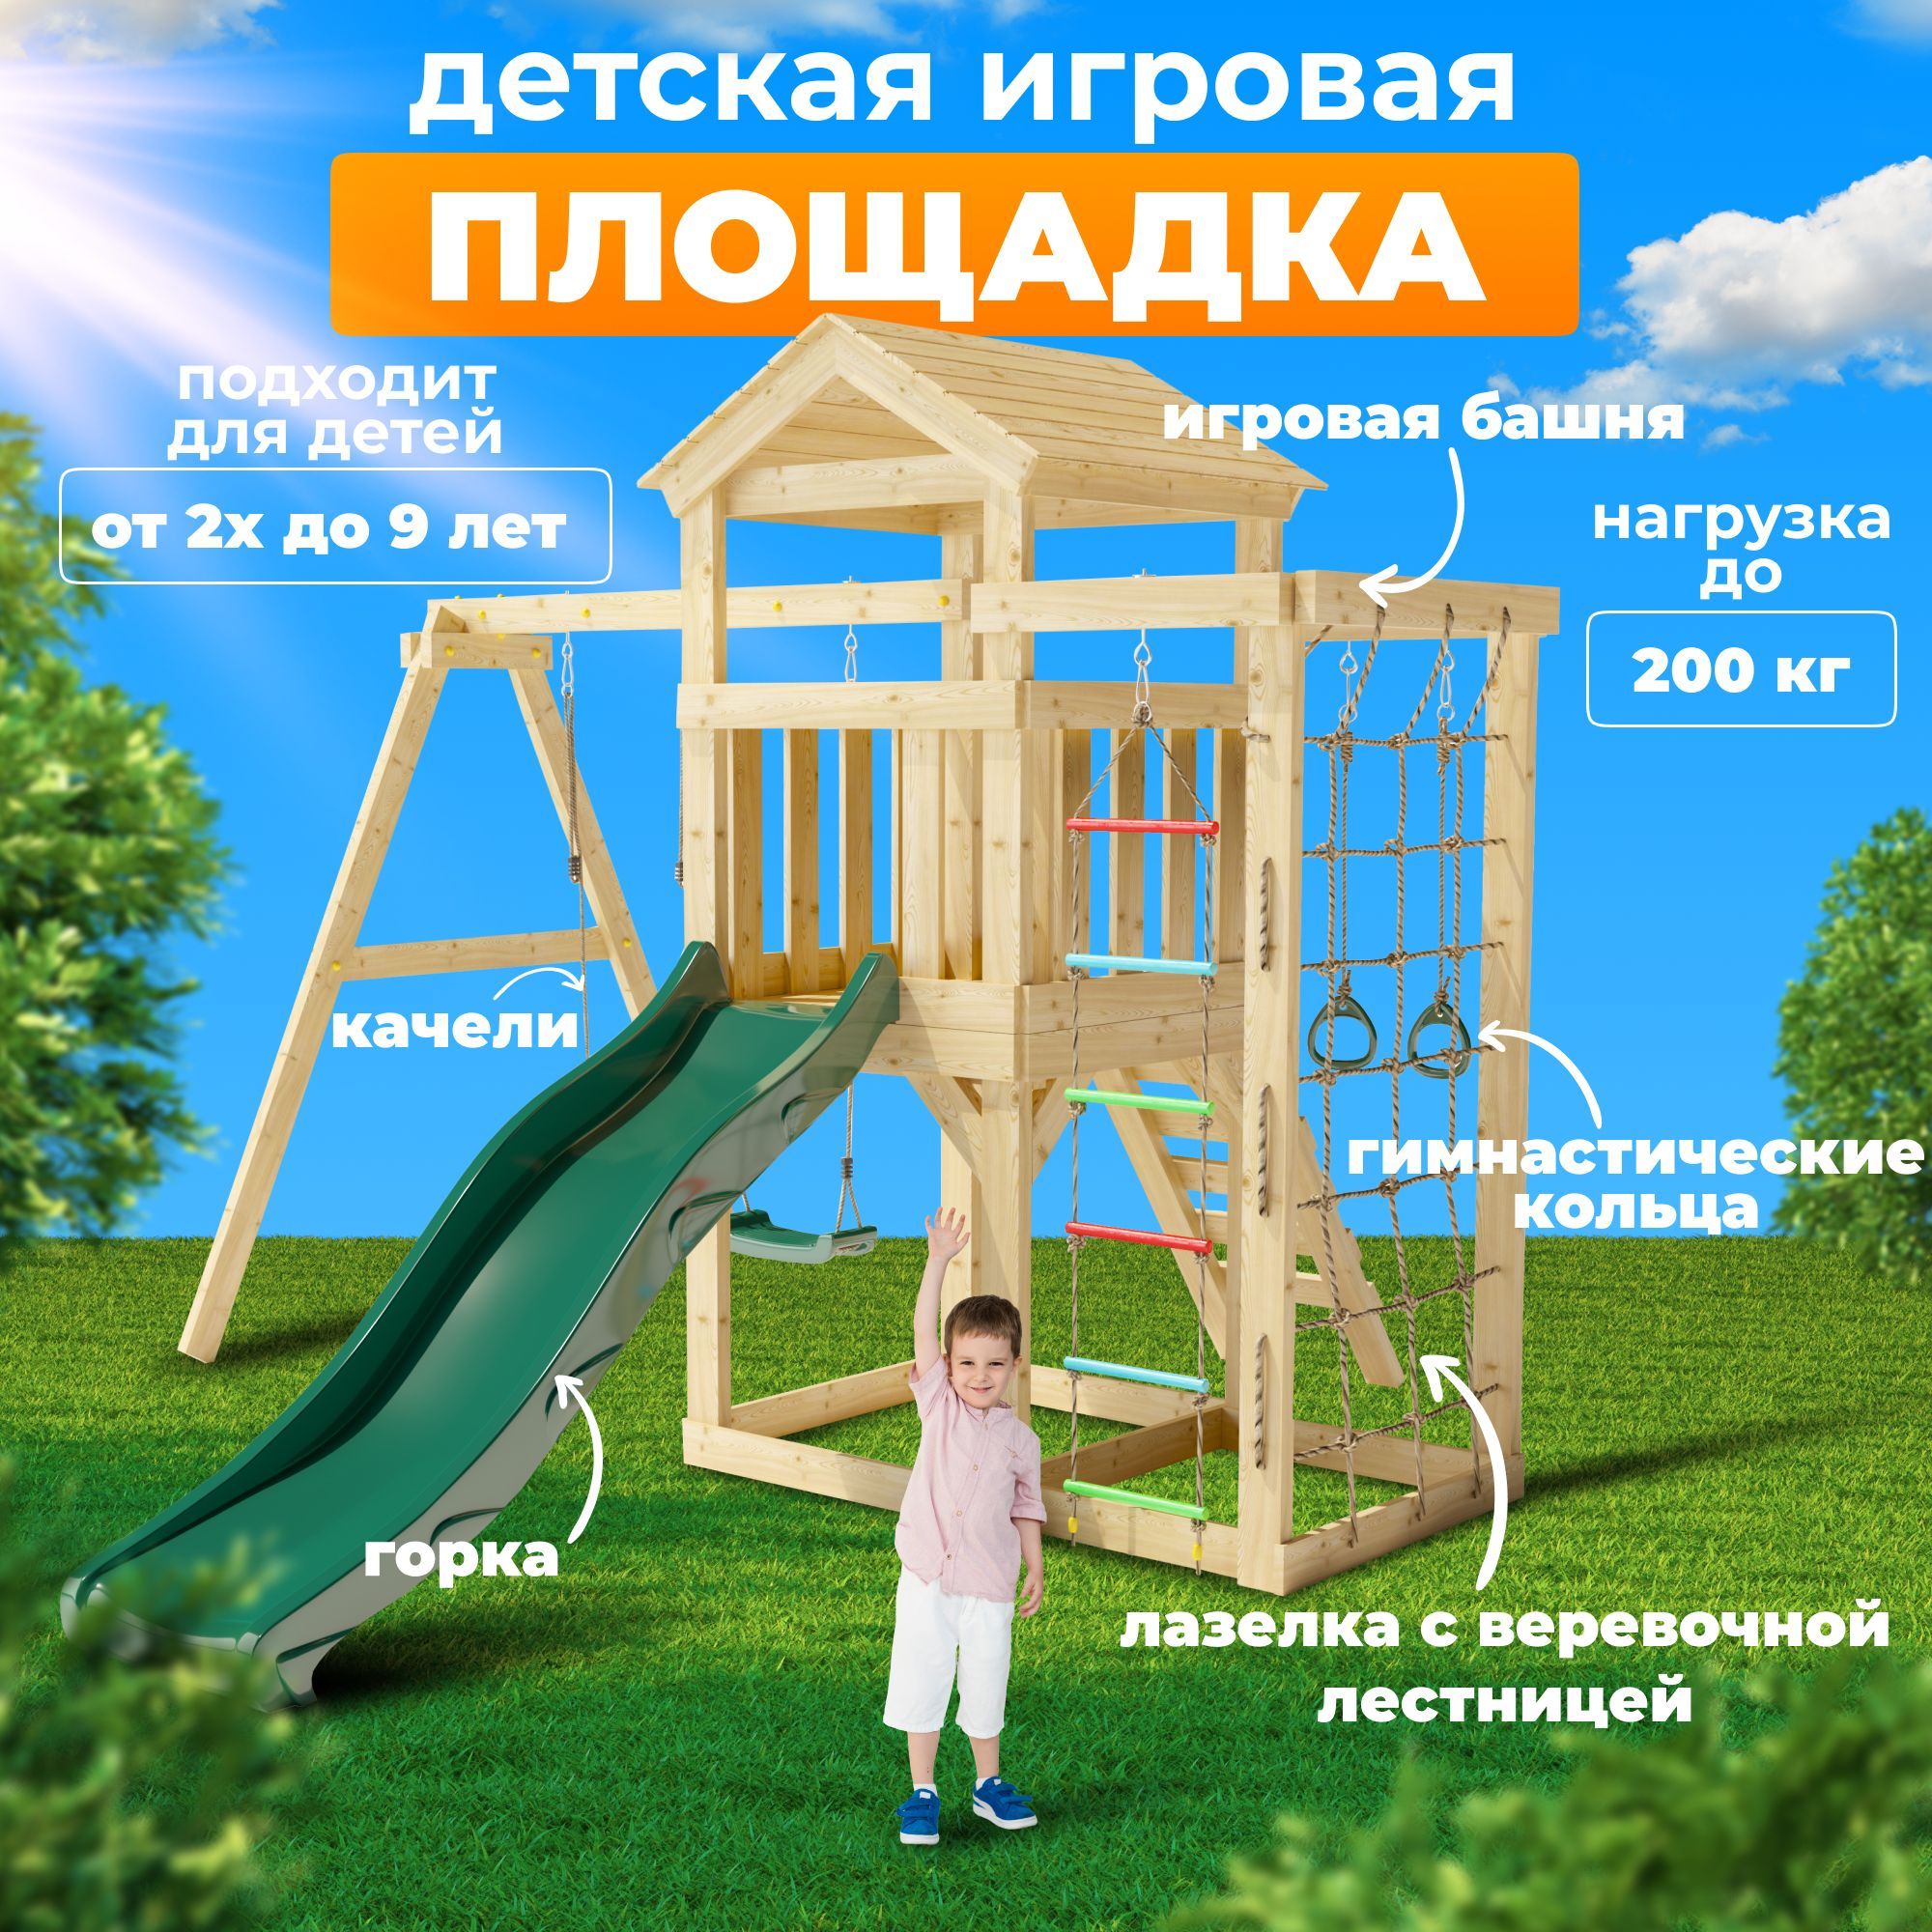 Изображения по запросу Детские площадки